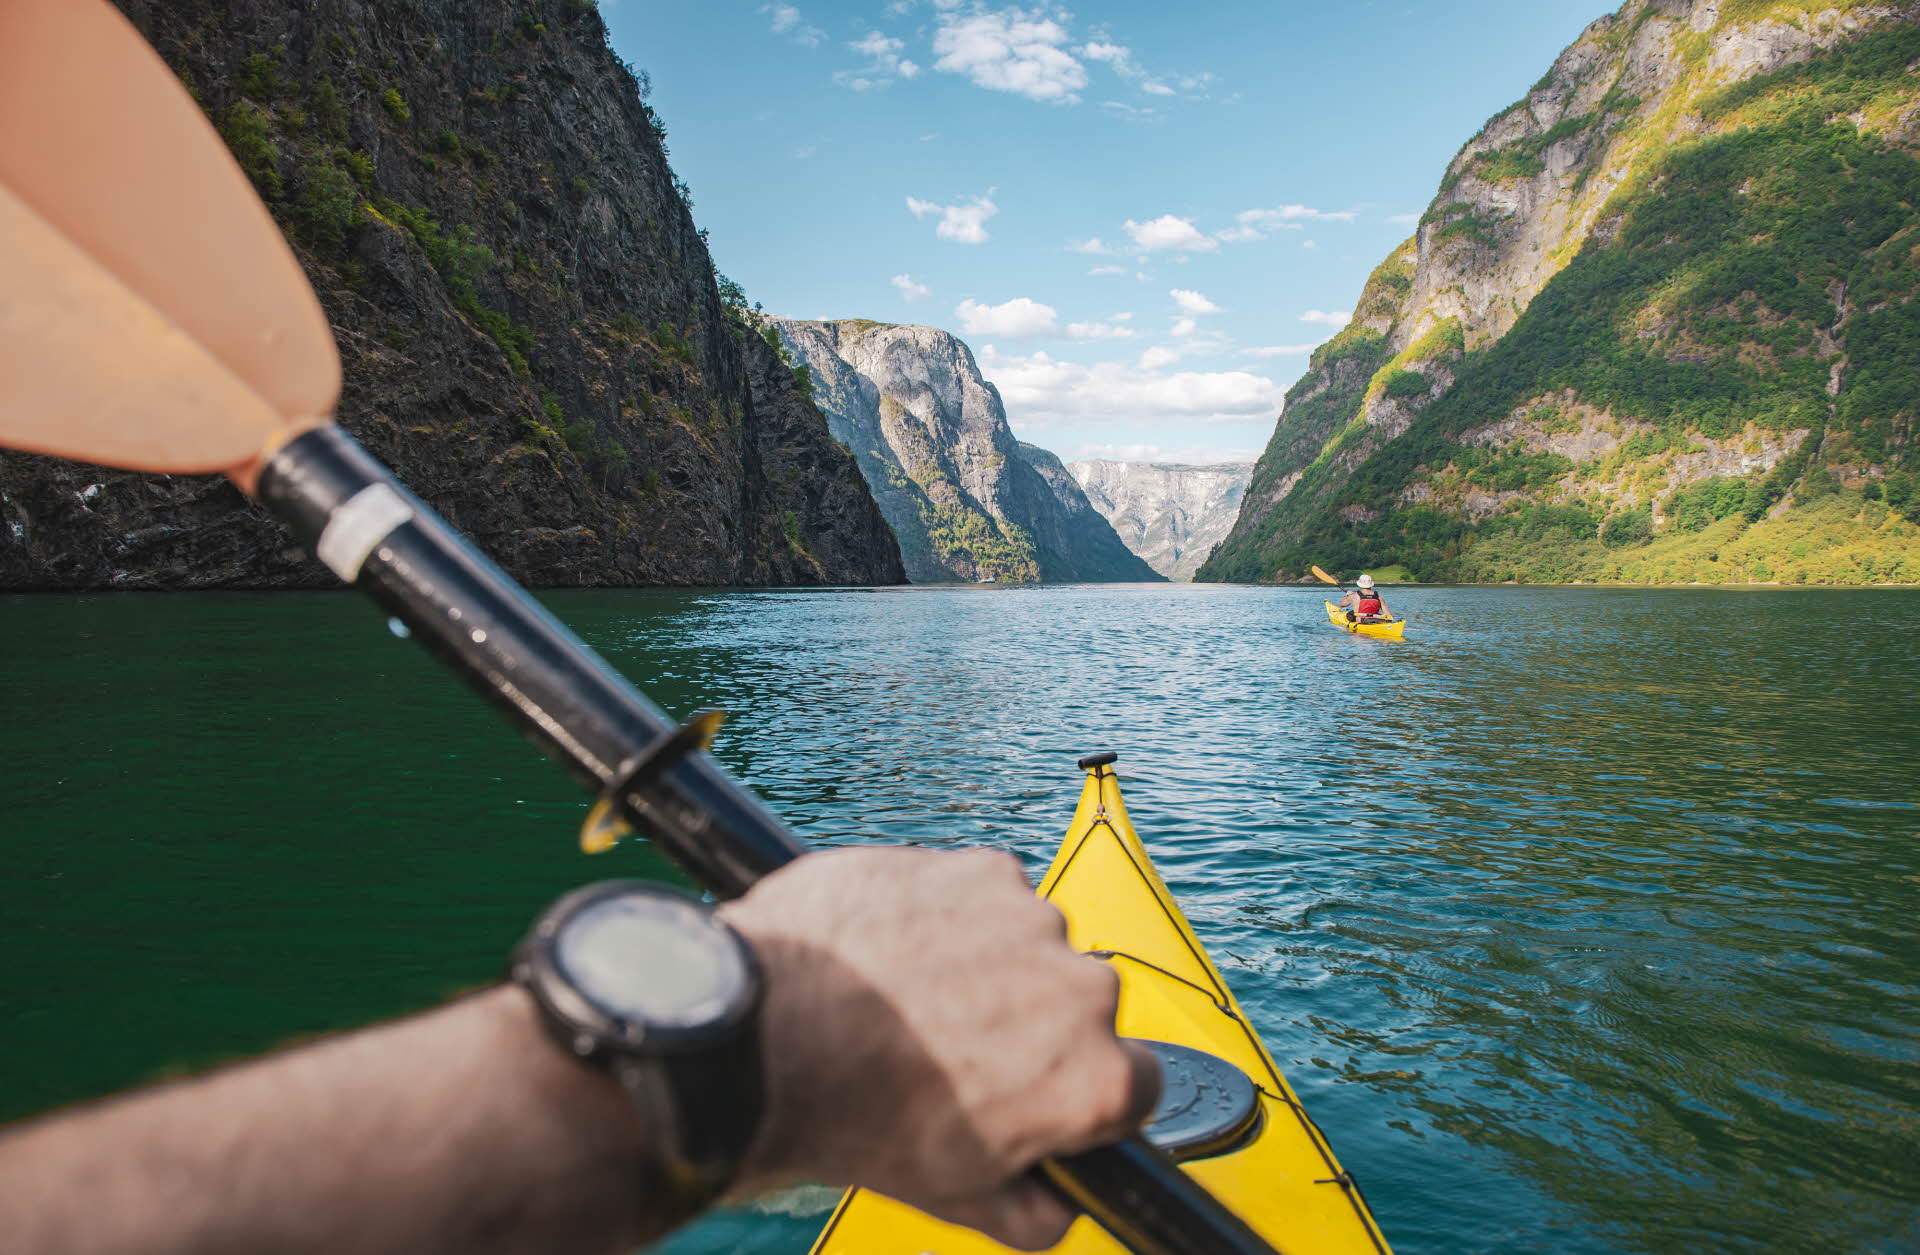 La main d’une personne assise dans un kayak jaune et tenant une pagaie. Une autre personne en kayak, le Nærøyfjord et des montagnes au premier plan.